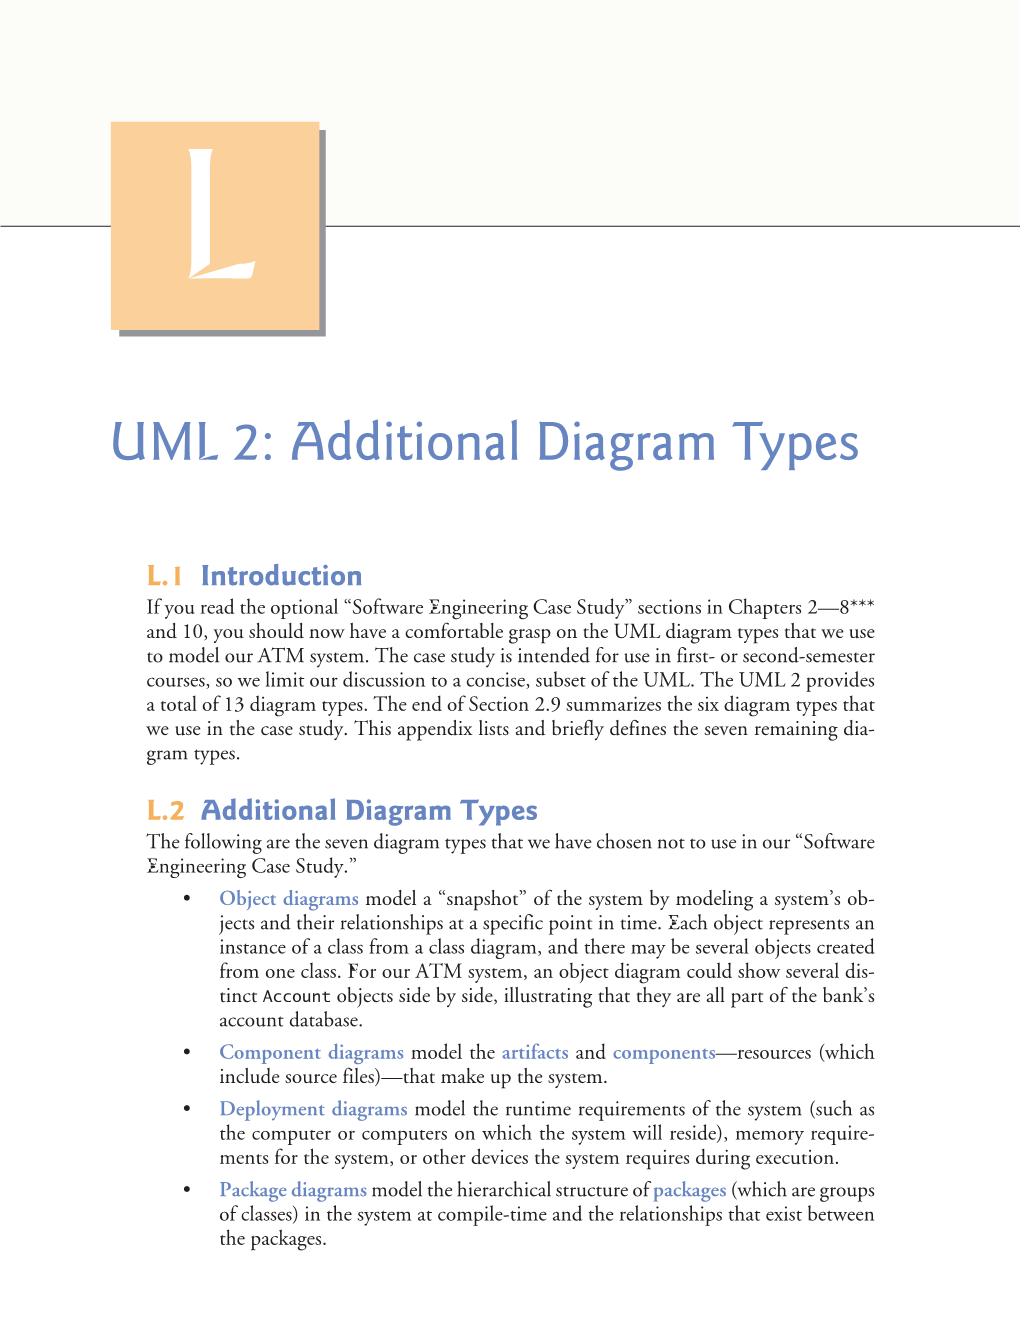 UML 2: Additional Diagram Types